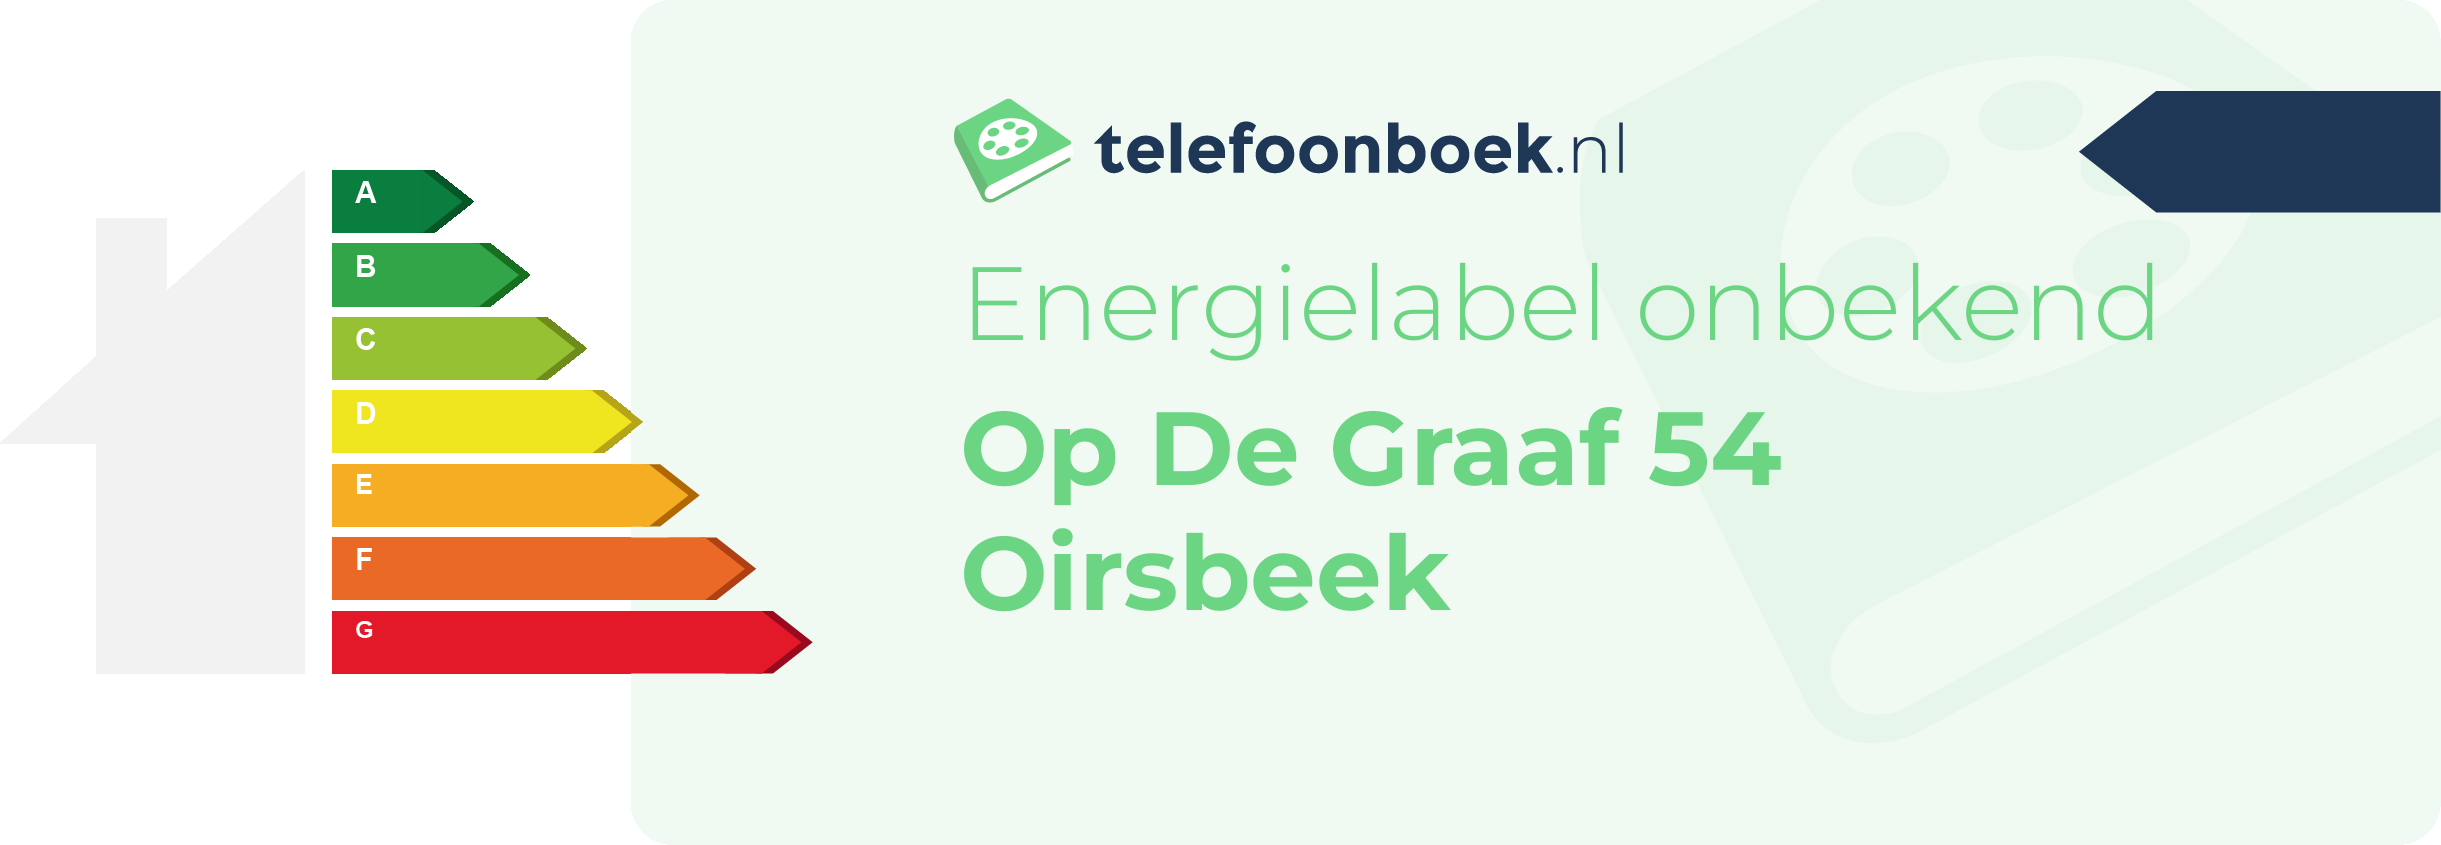 Energielabel Op De Graaf 54 Oirsbeek